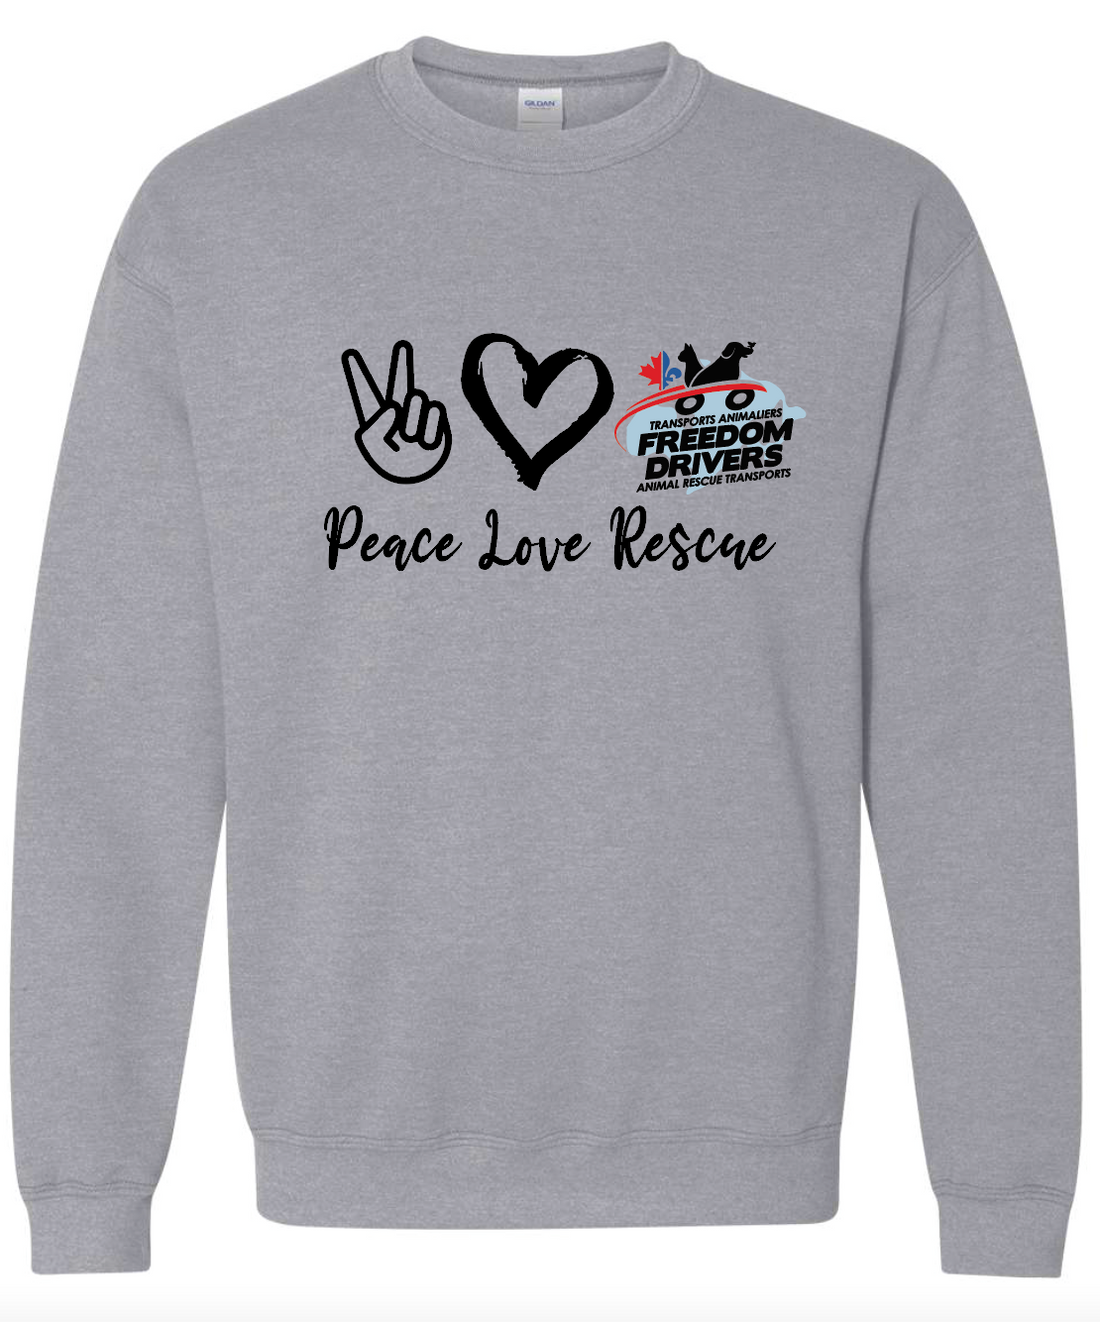 Peace Love Rescue Crewneck Sweater